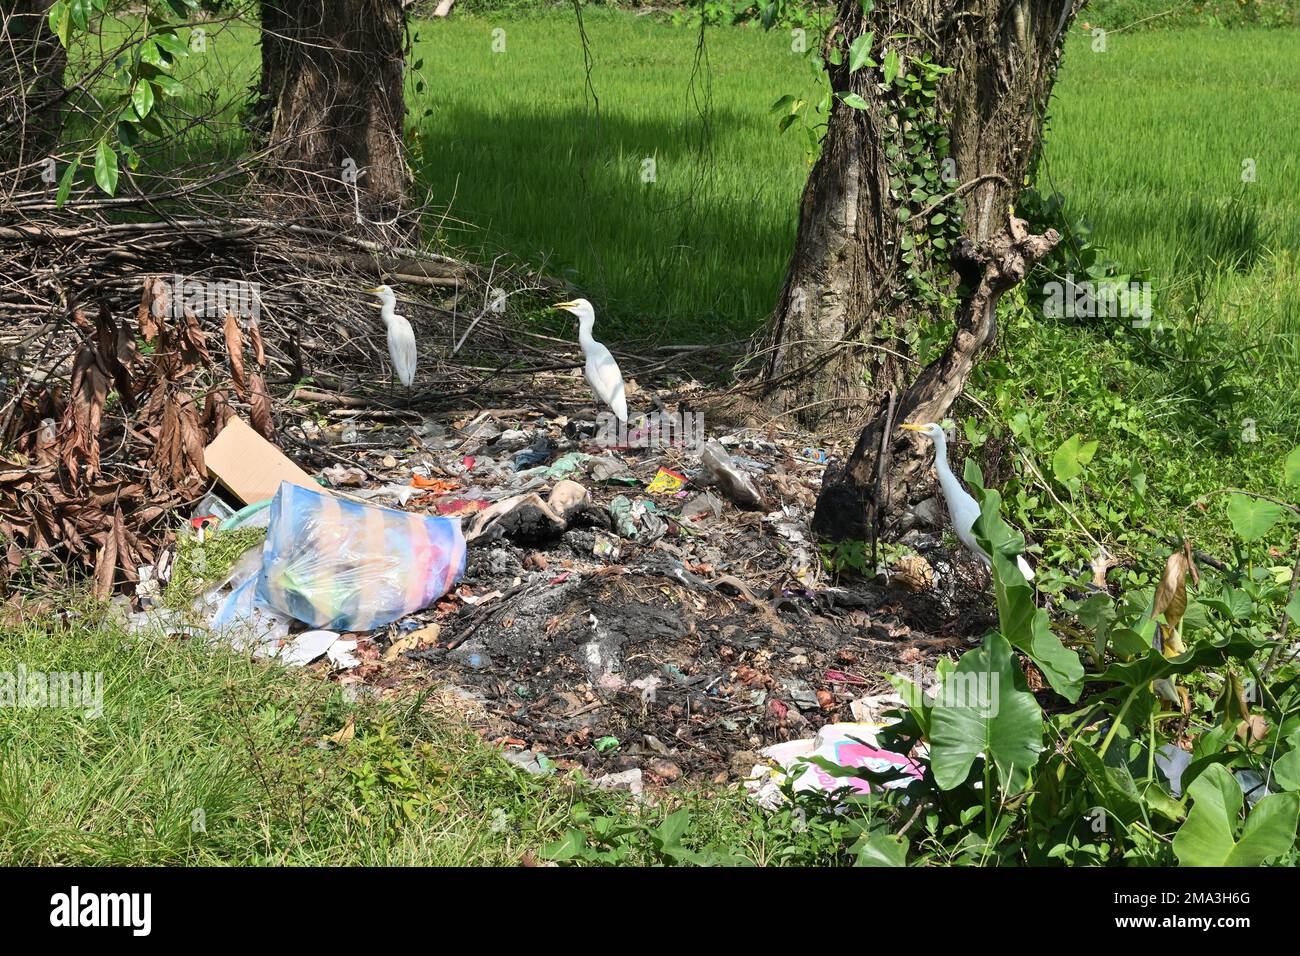 Horana, Sri Lanka -03 janvier 2023:Pile de déchets sur le côté de la route dans une zone rurale avec trois oiseaux de grue sur la pile de déchets Banque D'Images